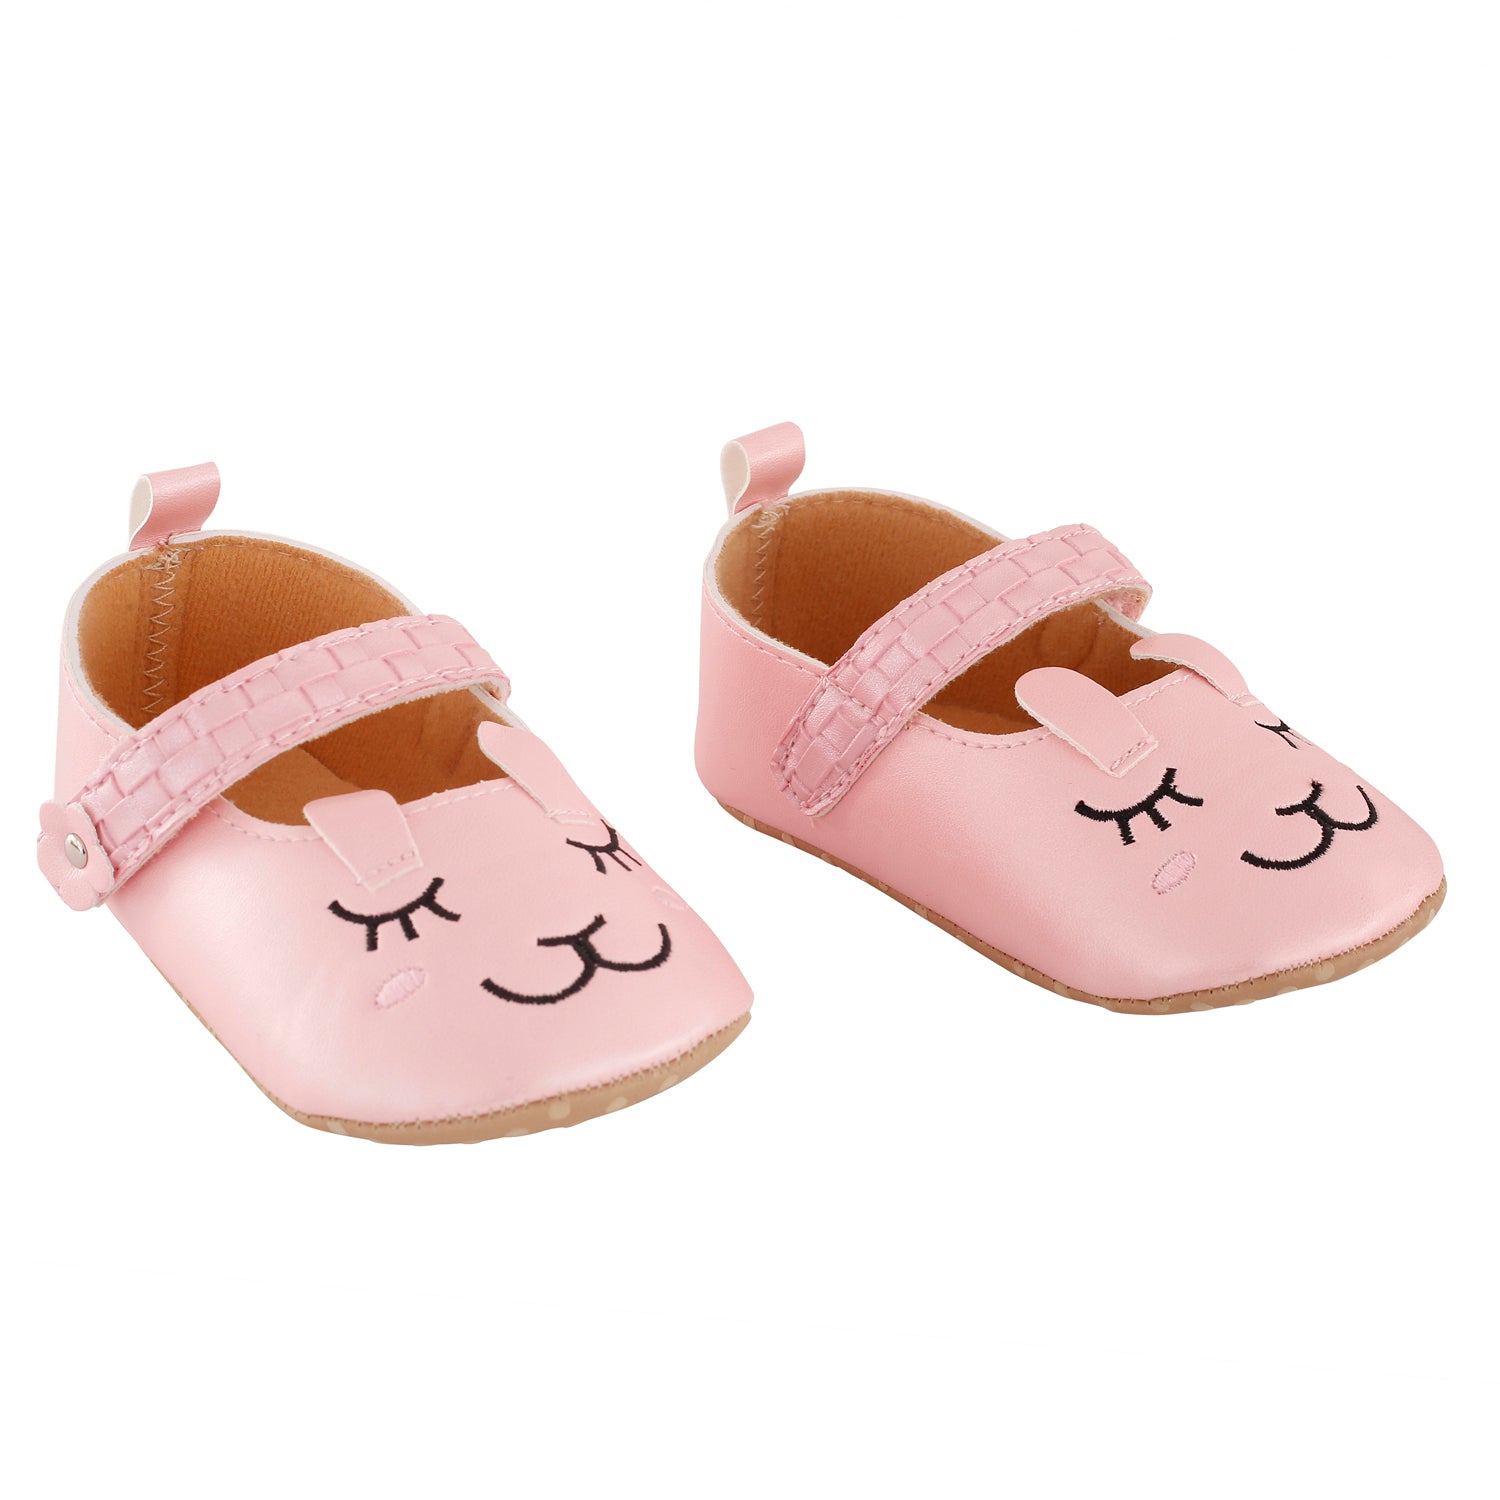 Baby Moo Blushing Kitten Pink Party Booties